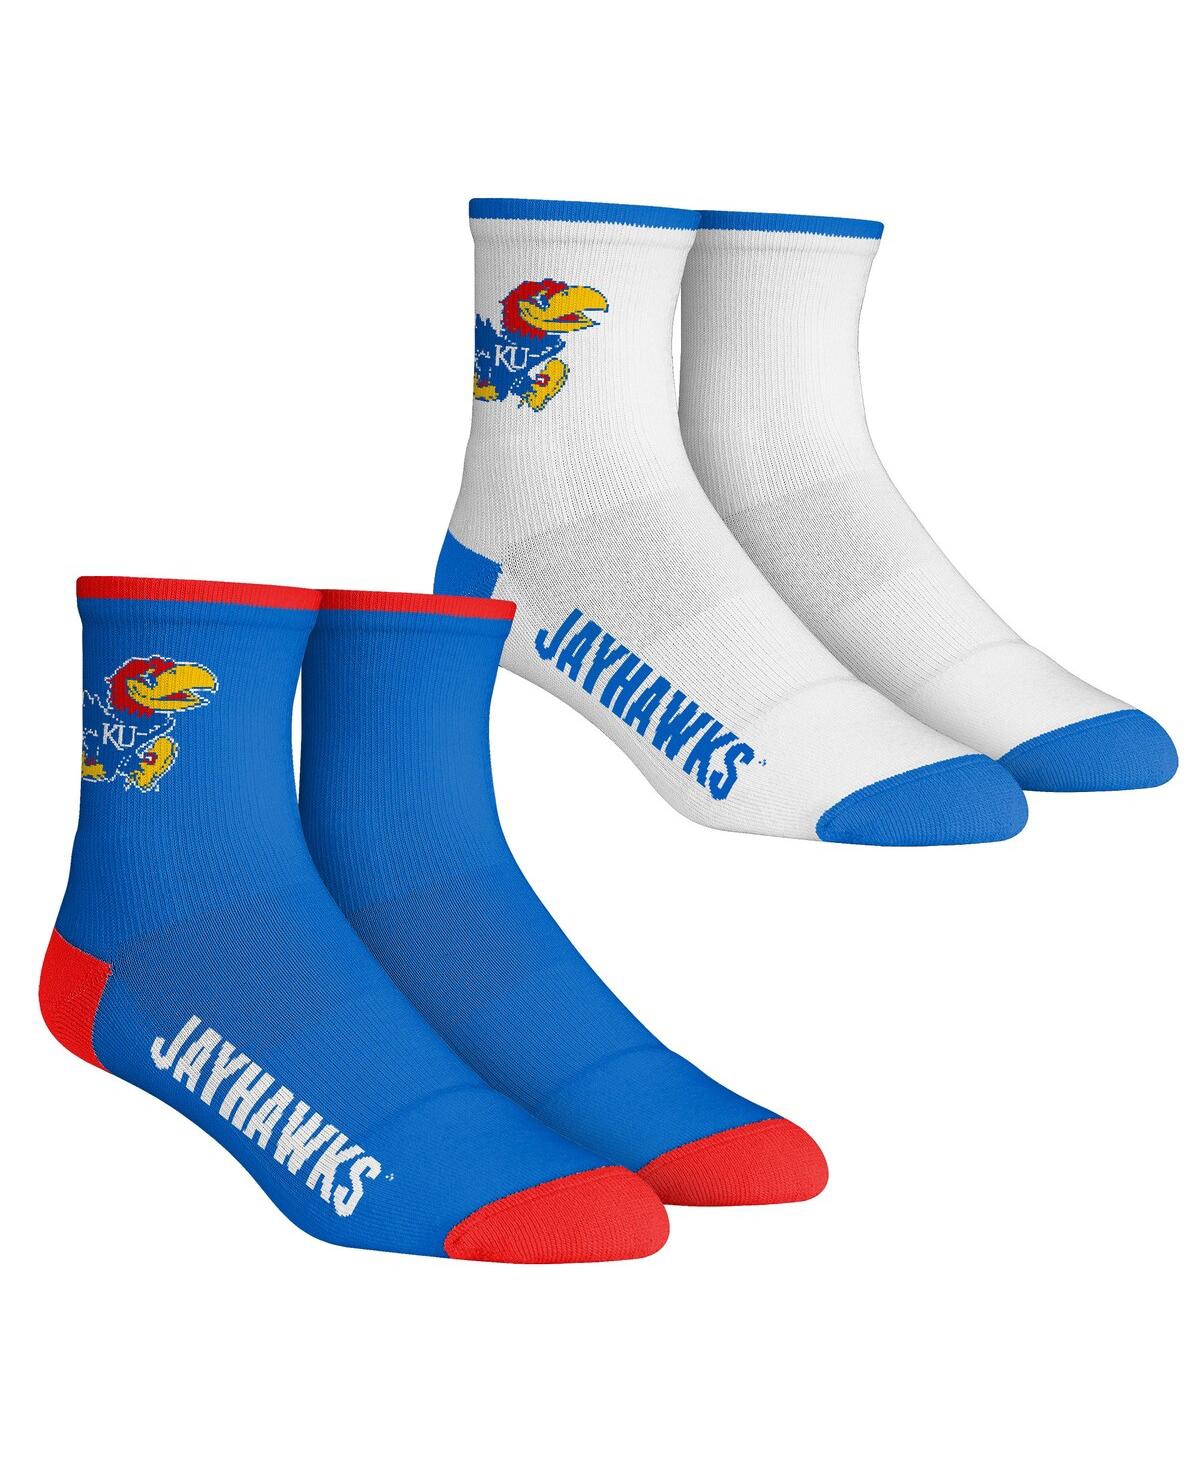 Rock 'em Kids' Youth Boys And Girls  Socks Kansas Jayhawks Core Team 2-pack Quarter Length Sock Set In Blue,white